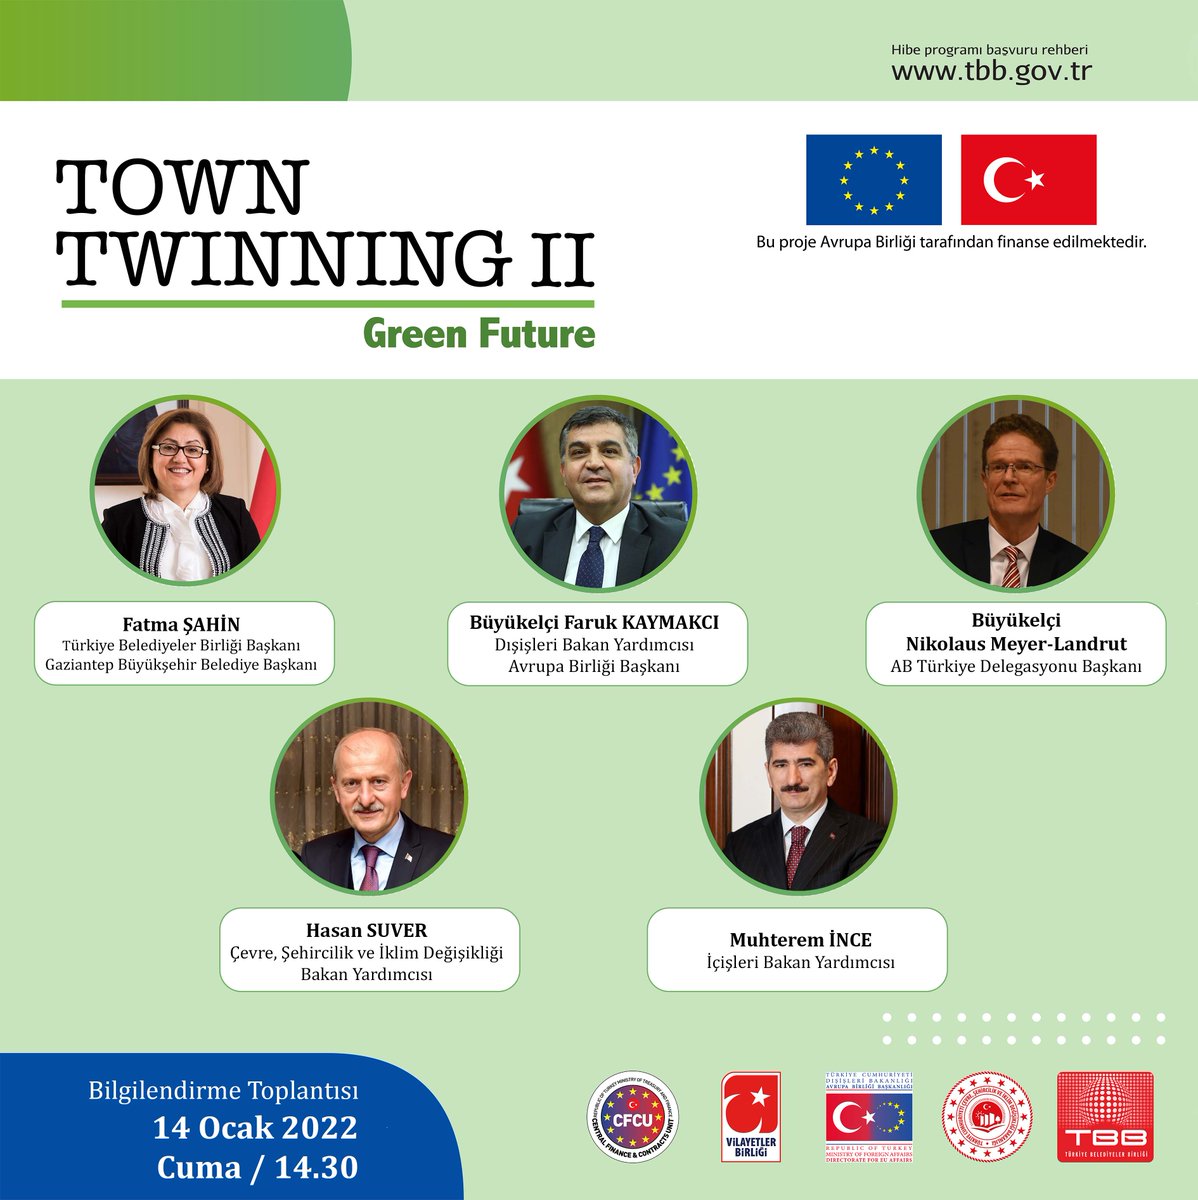 #ŞehirEşleştirme-II: Yeşil Bir Gelecek İçin Eşleştirme Hibe Programının bilgilendirme toplantısı çevrim içi yapılacak. #TownTwinning #YeşilMutabakat
Takvim 14 Ocak -Saat 14.30
Türk ve AB tarafından katılımcıların buluşacağı toplantıya katılmak için:tbb.gov.tr/Tr/Duyuru_sehi…